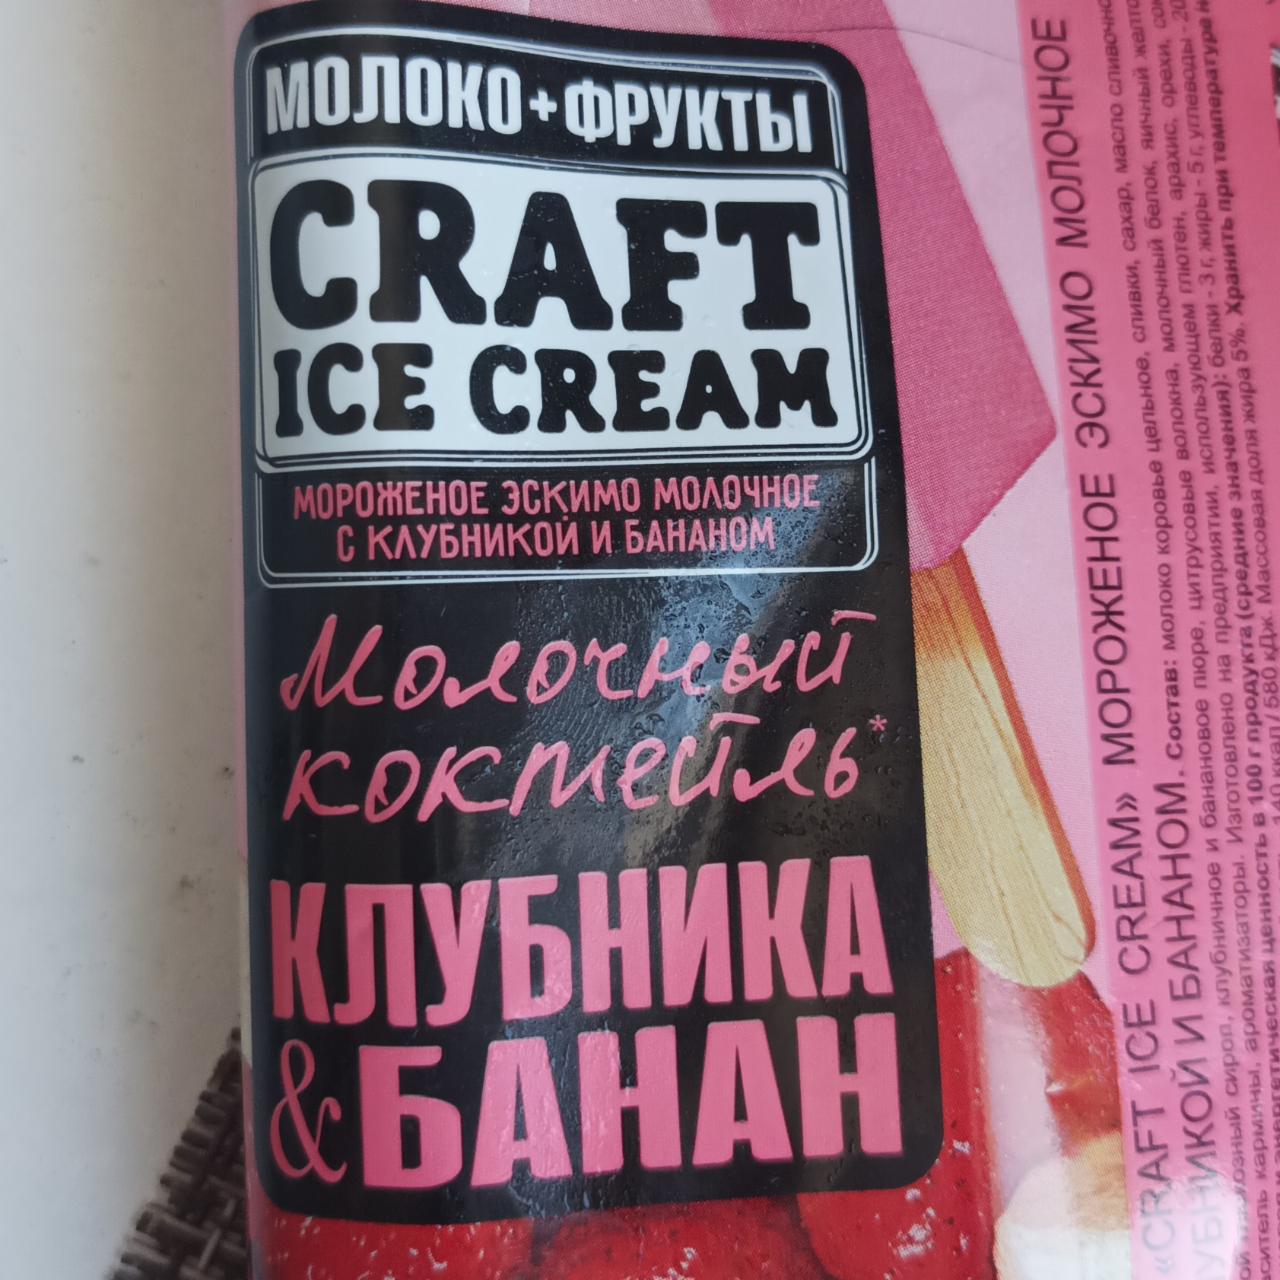 Фото - Мороженное эскимо молочное с клубникой и бананом Craft ice cream